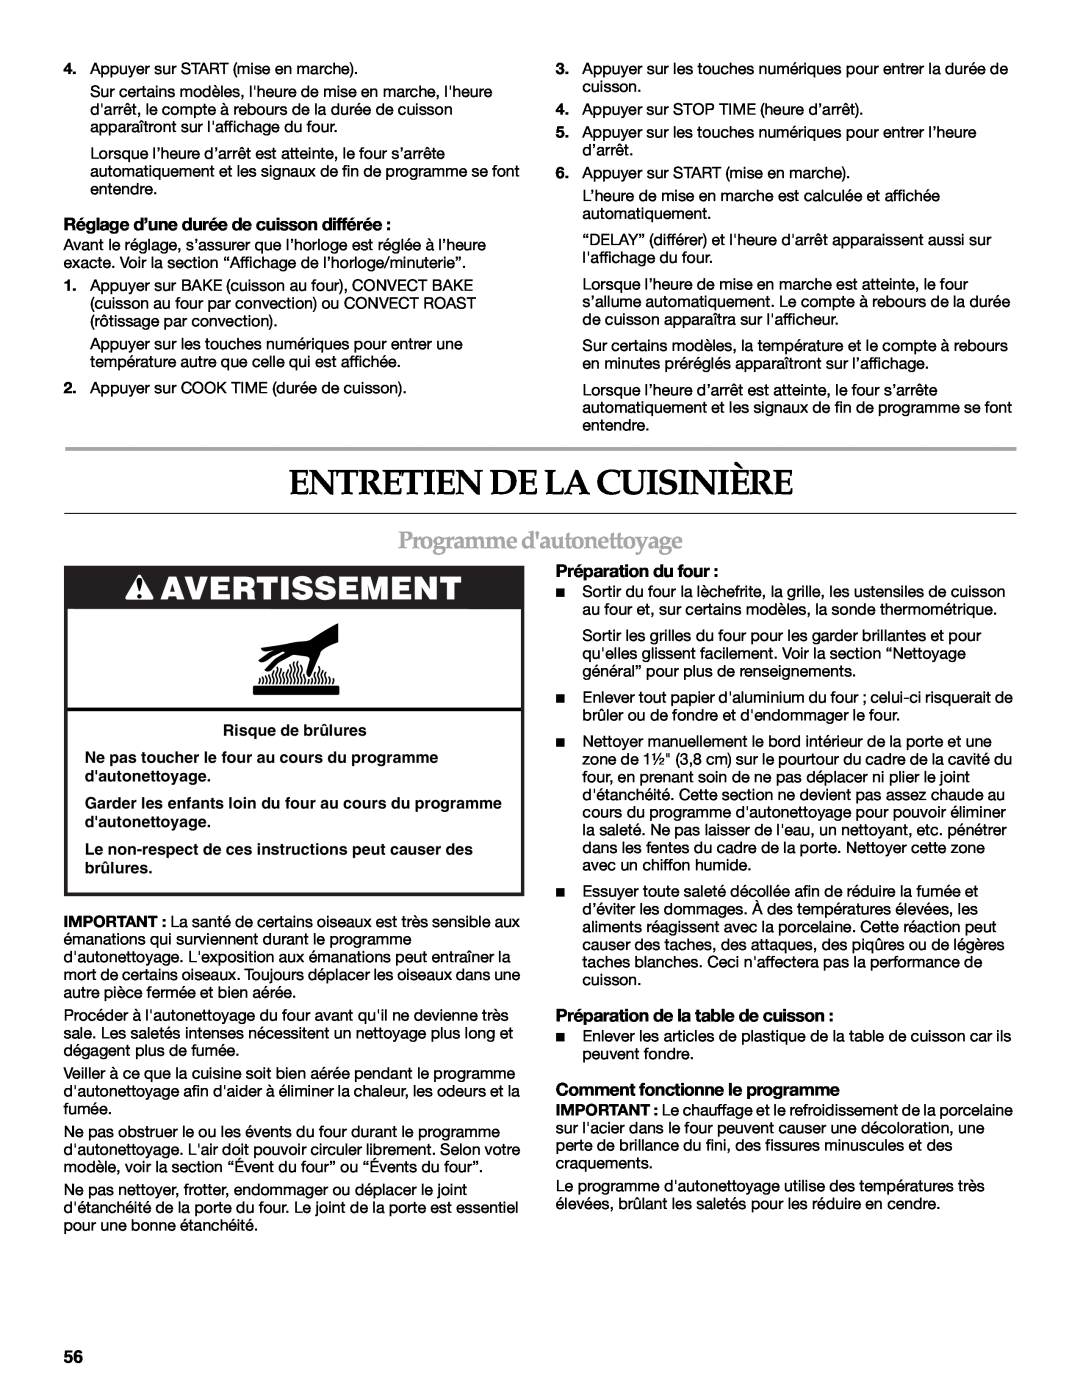 KitchenAid KDRS463, KDRS467 manual Entretien De La Cuisinière, Programme dautonettoyage, Avertissement, Préparation du four 